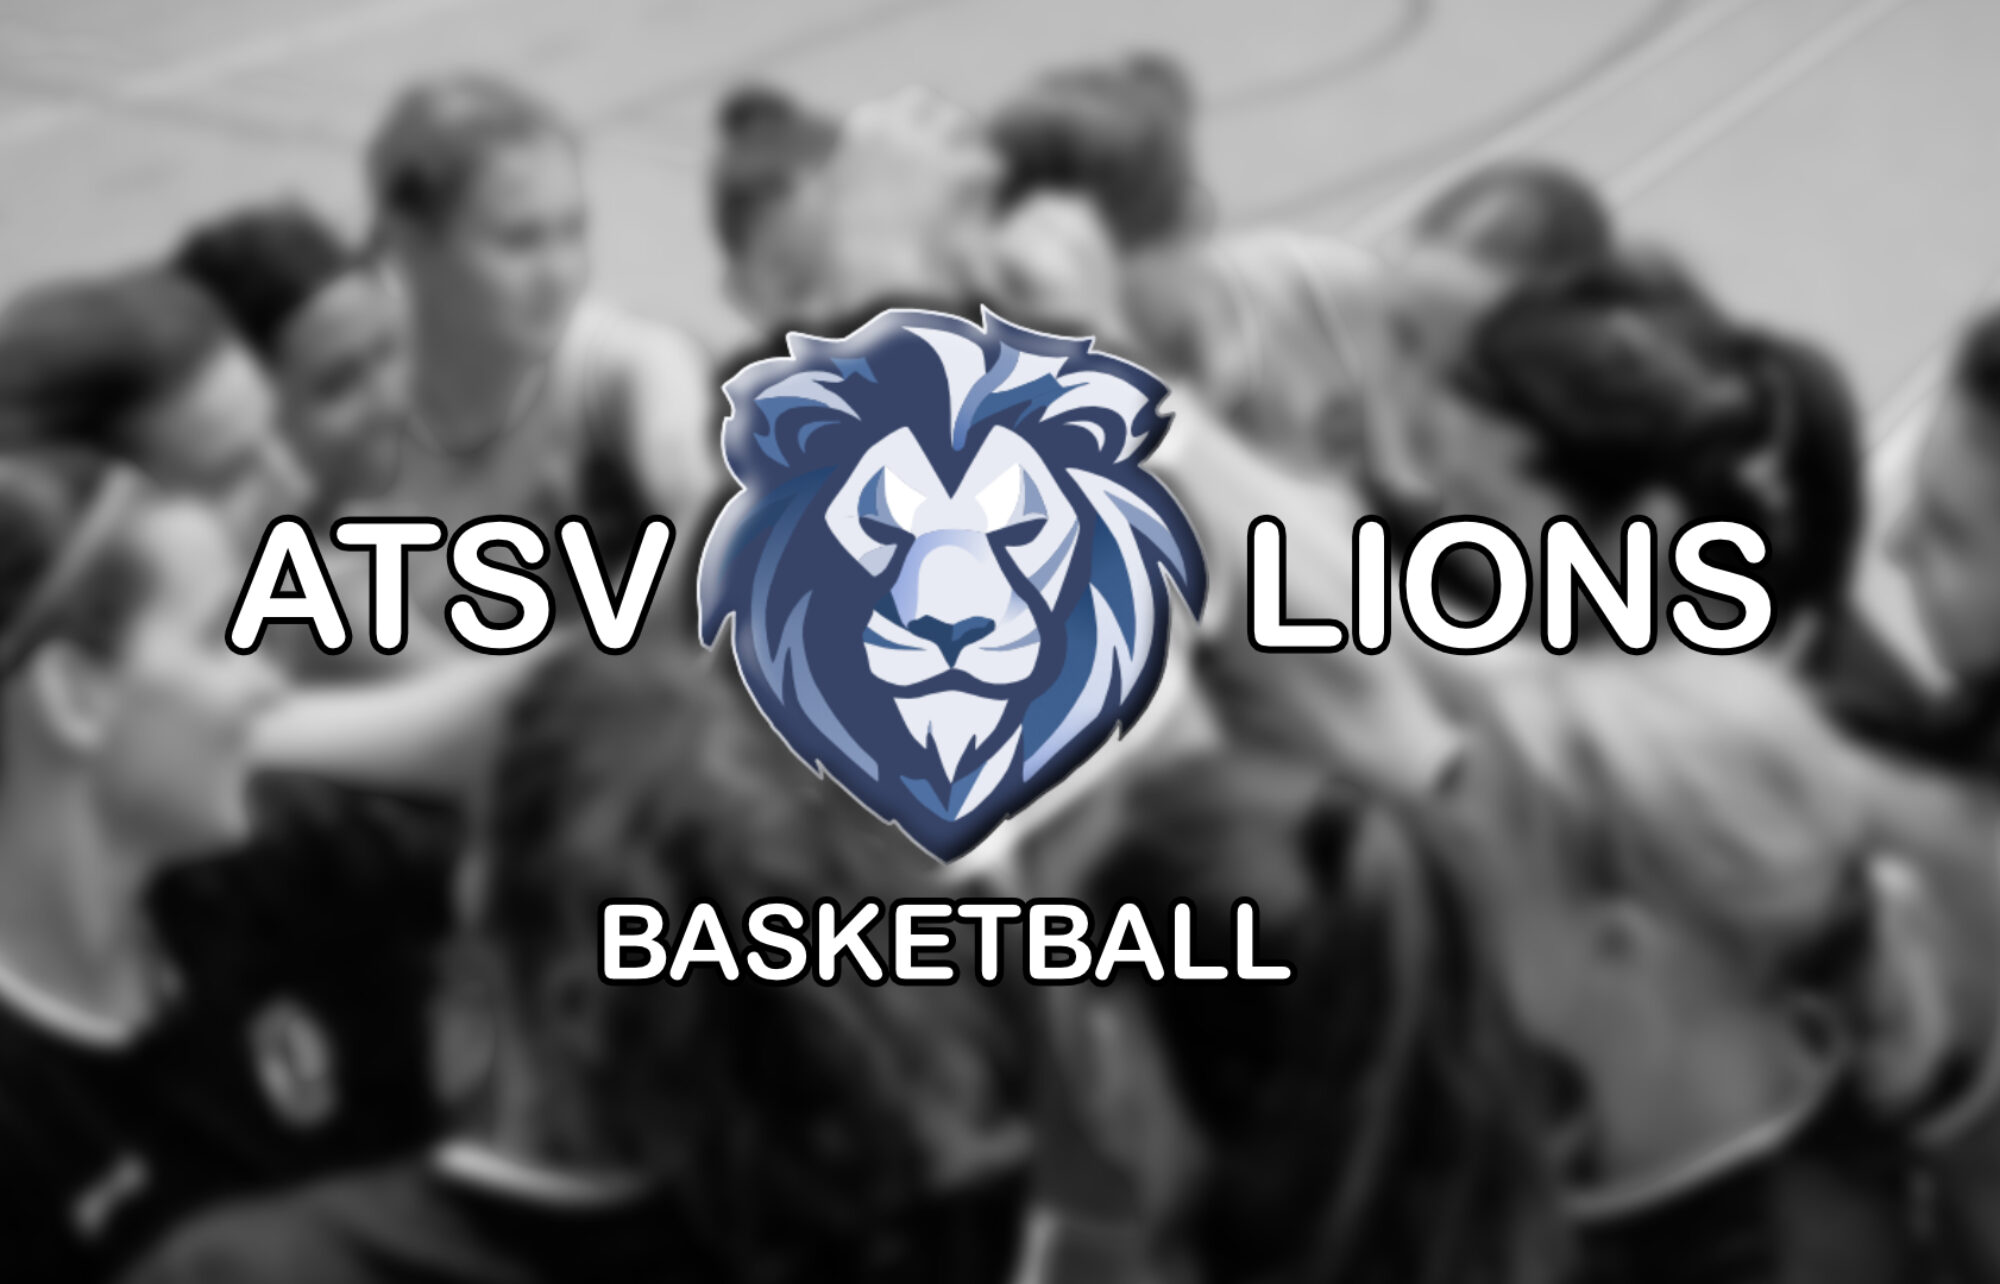 ATSV Lions Basketball